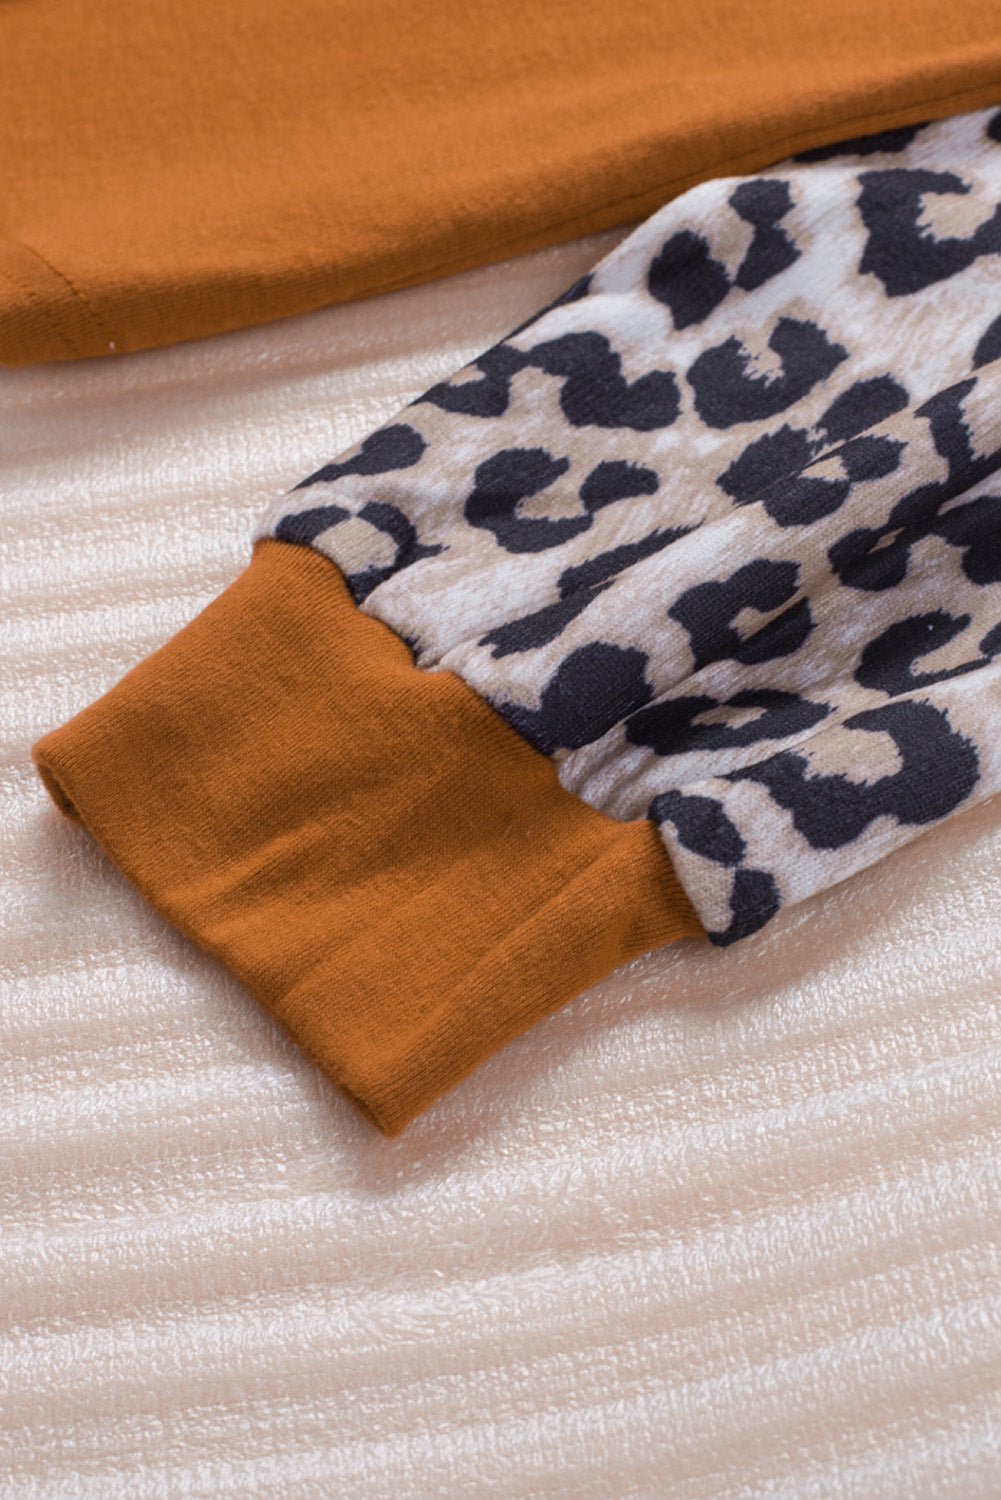 Smeđa majica dugih rukava sa šljokicama od leoparda